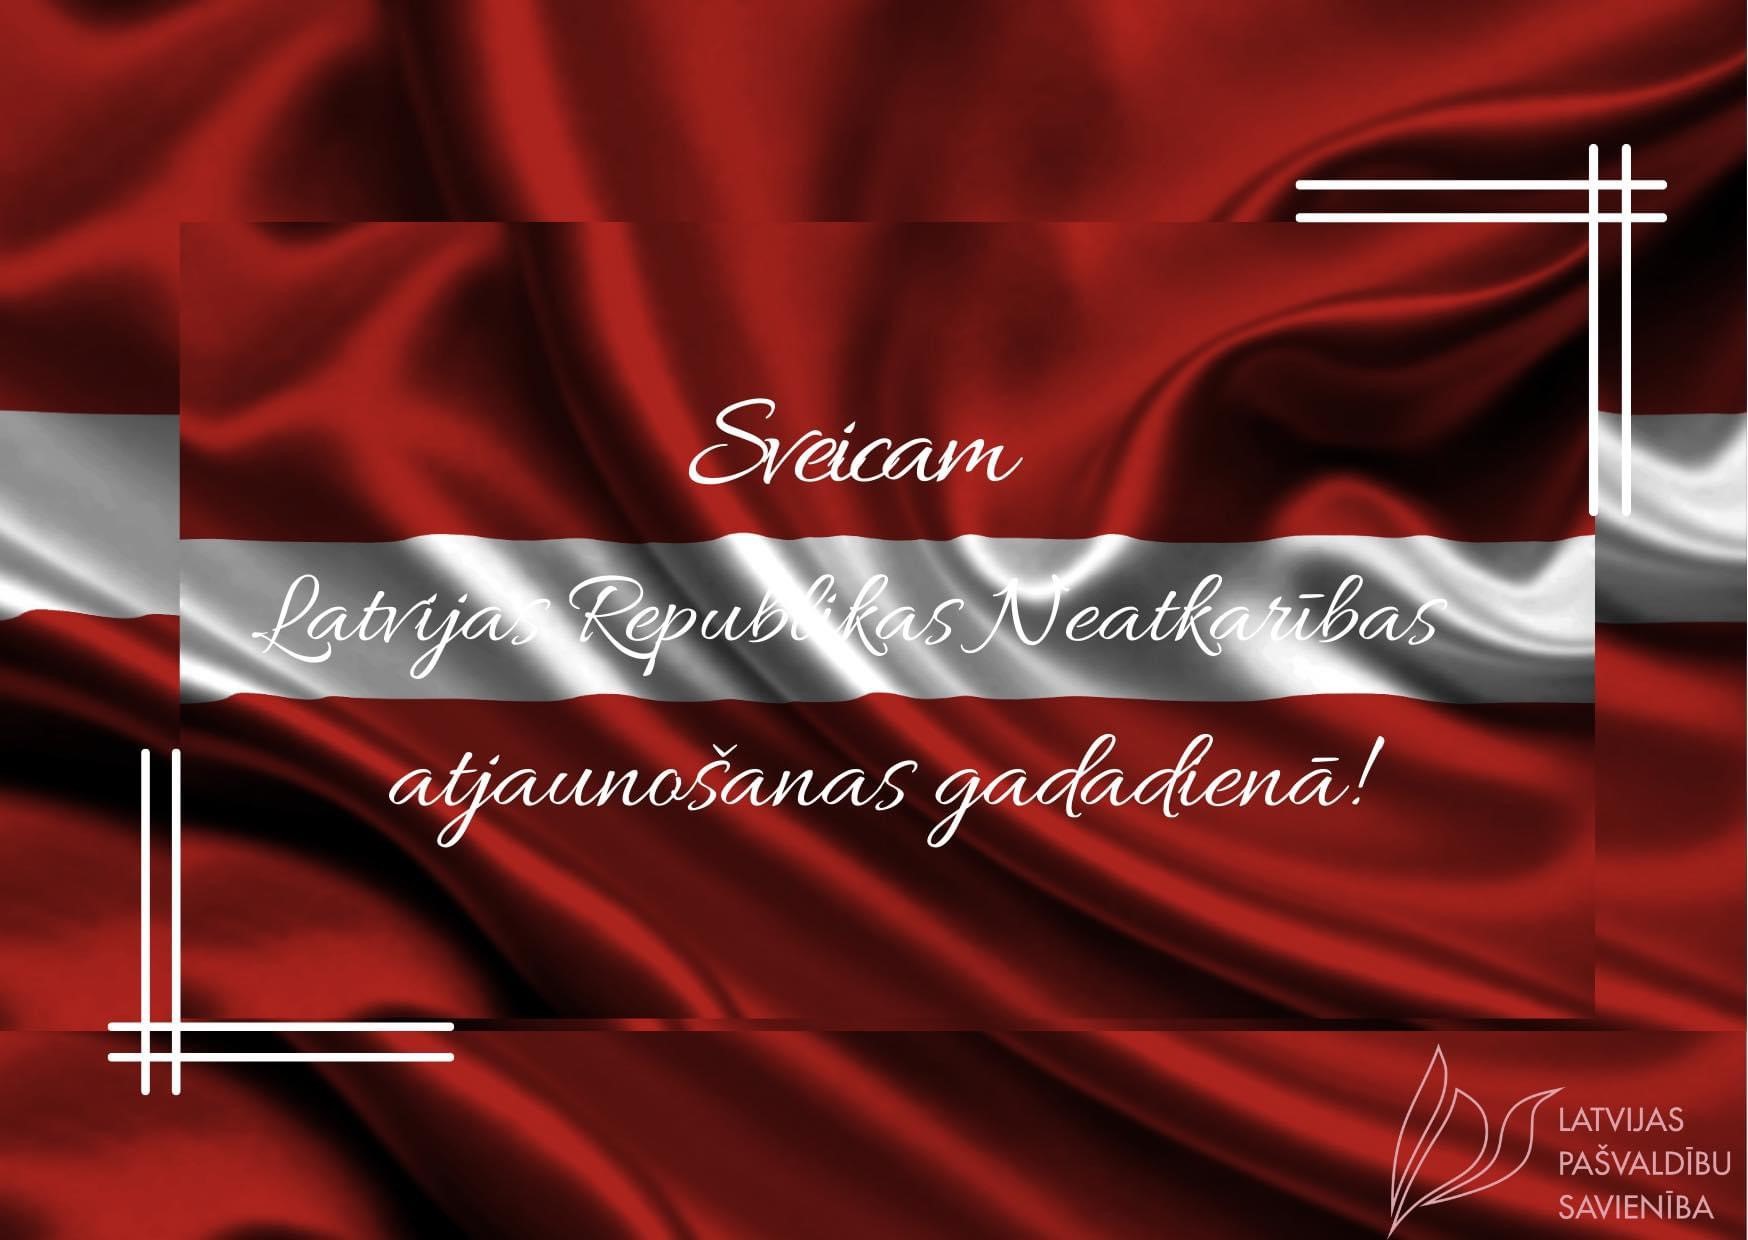 Sveicam Latvijas Republikas Neatkarības atjaunošanas gadadienā!